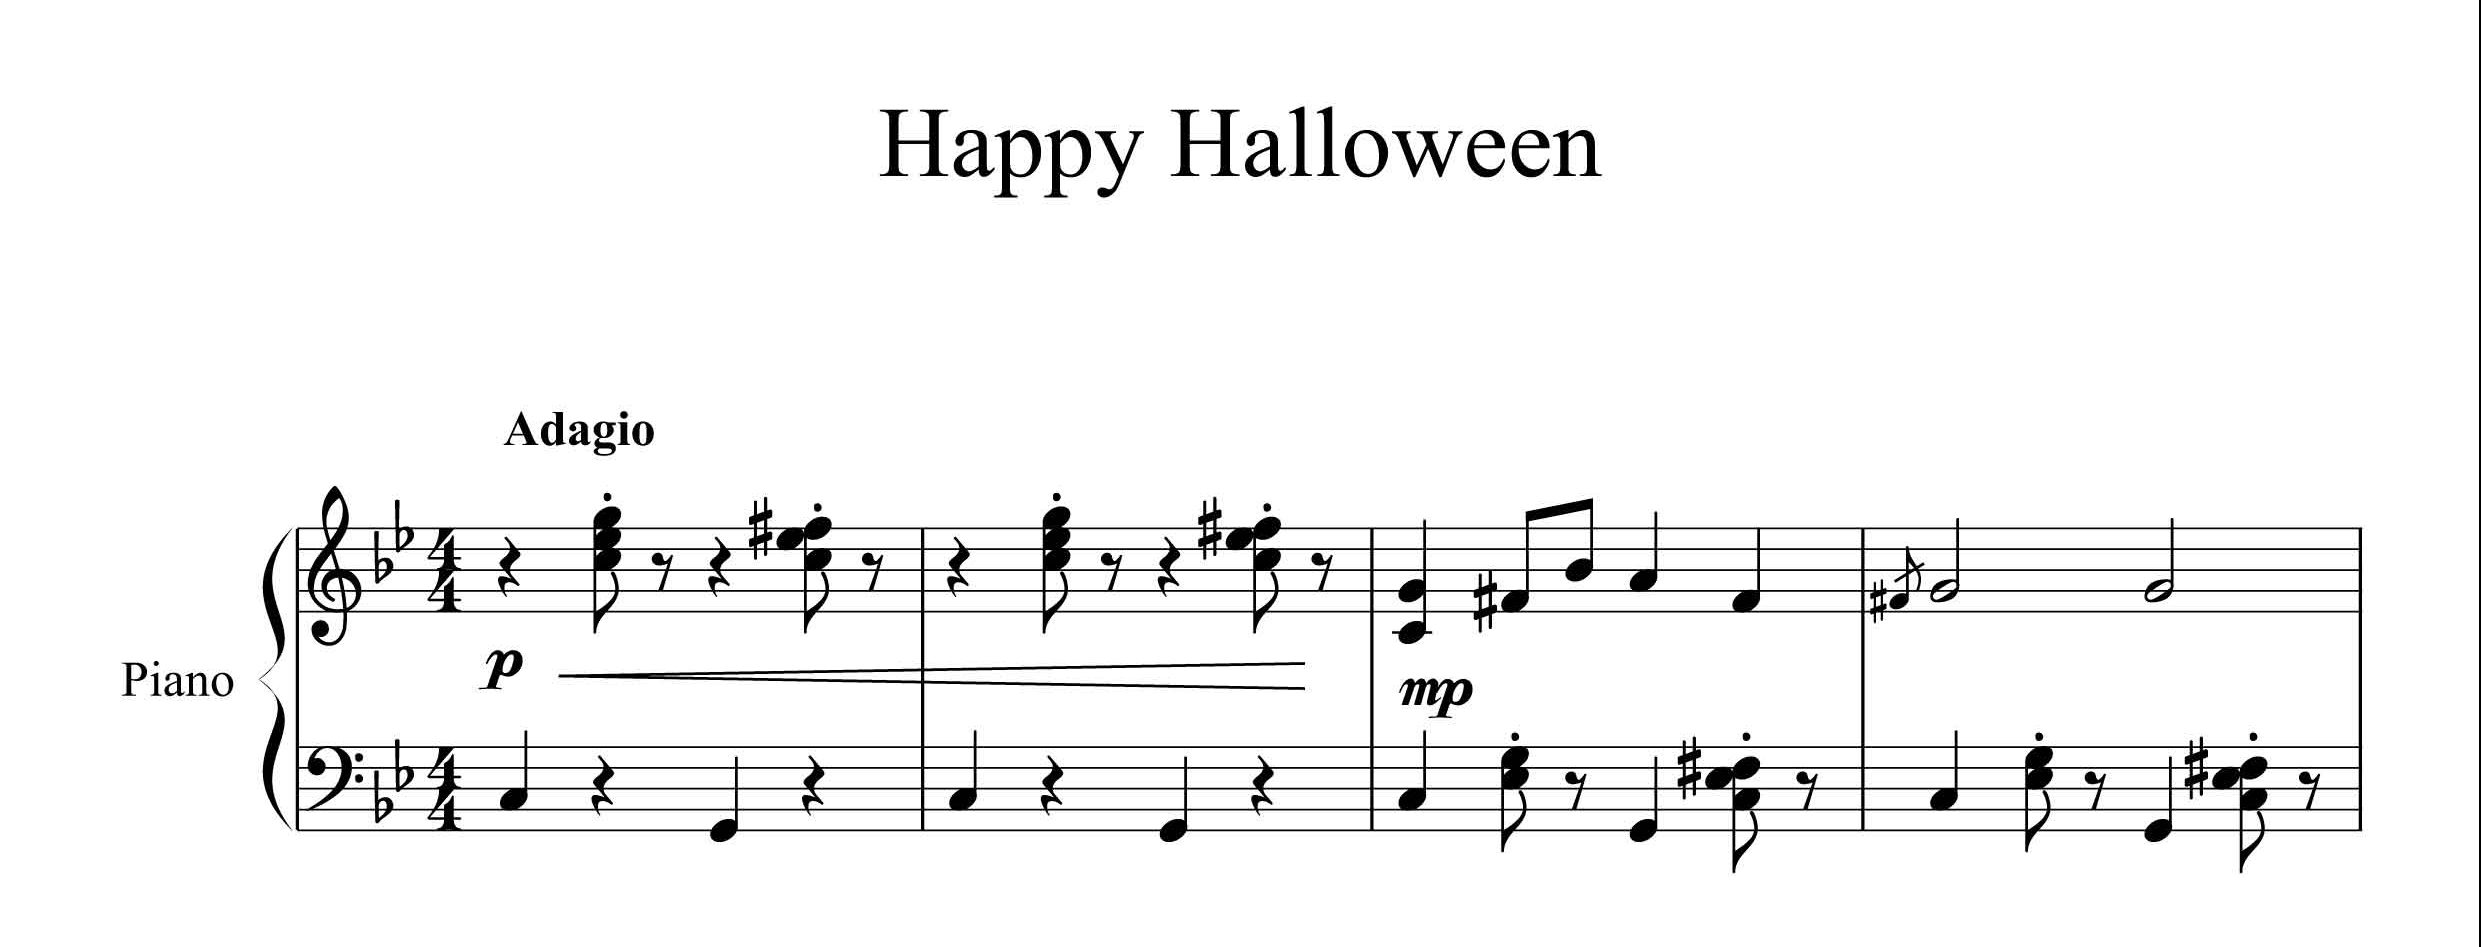 نت آهنگ هالووین برای پیانو